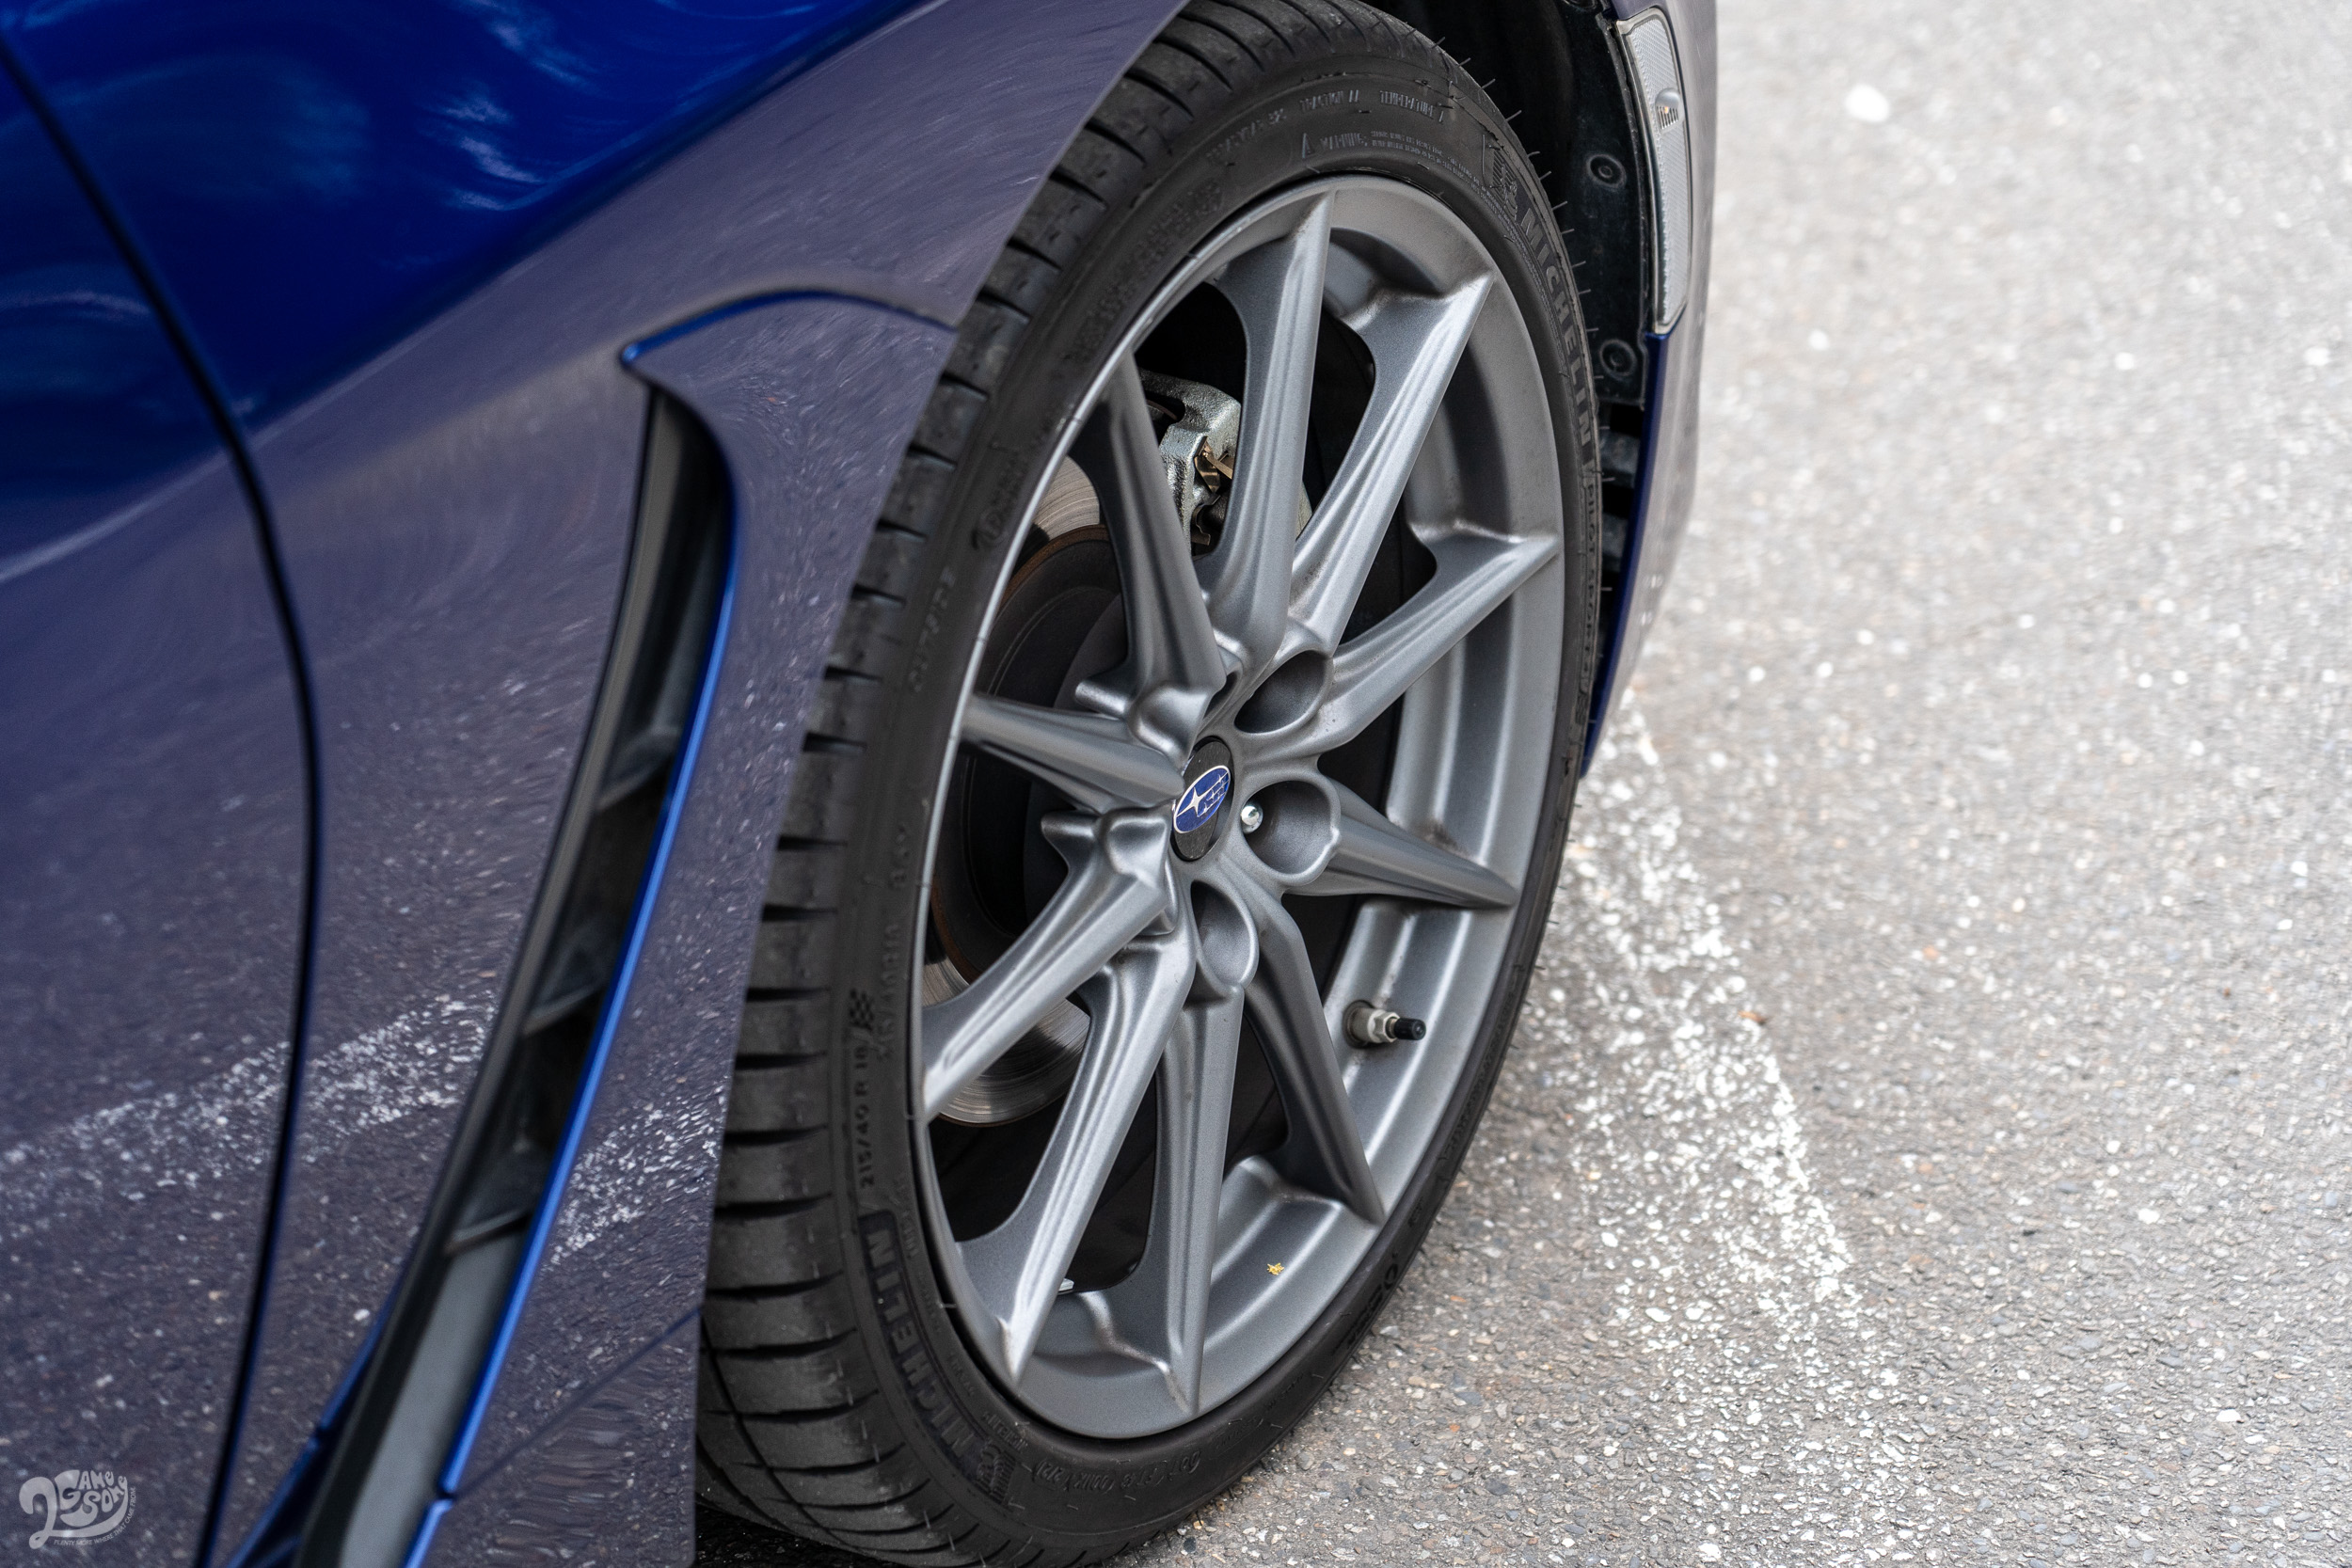 BRZ 的圈胎配置從上一代的 17 吋升級至 18 吋，輪胎則使用 Michelin Pilot Sport 4 規格，明顯有升級餘韻。